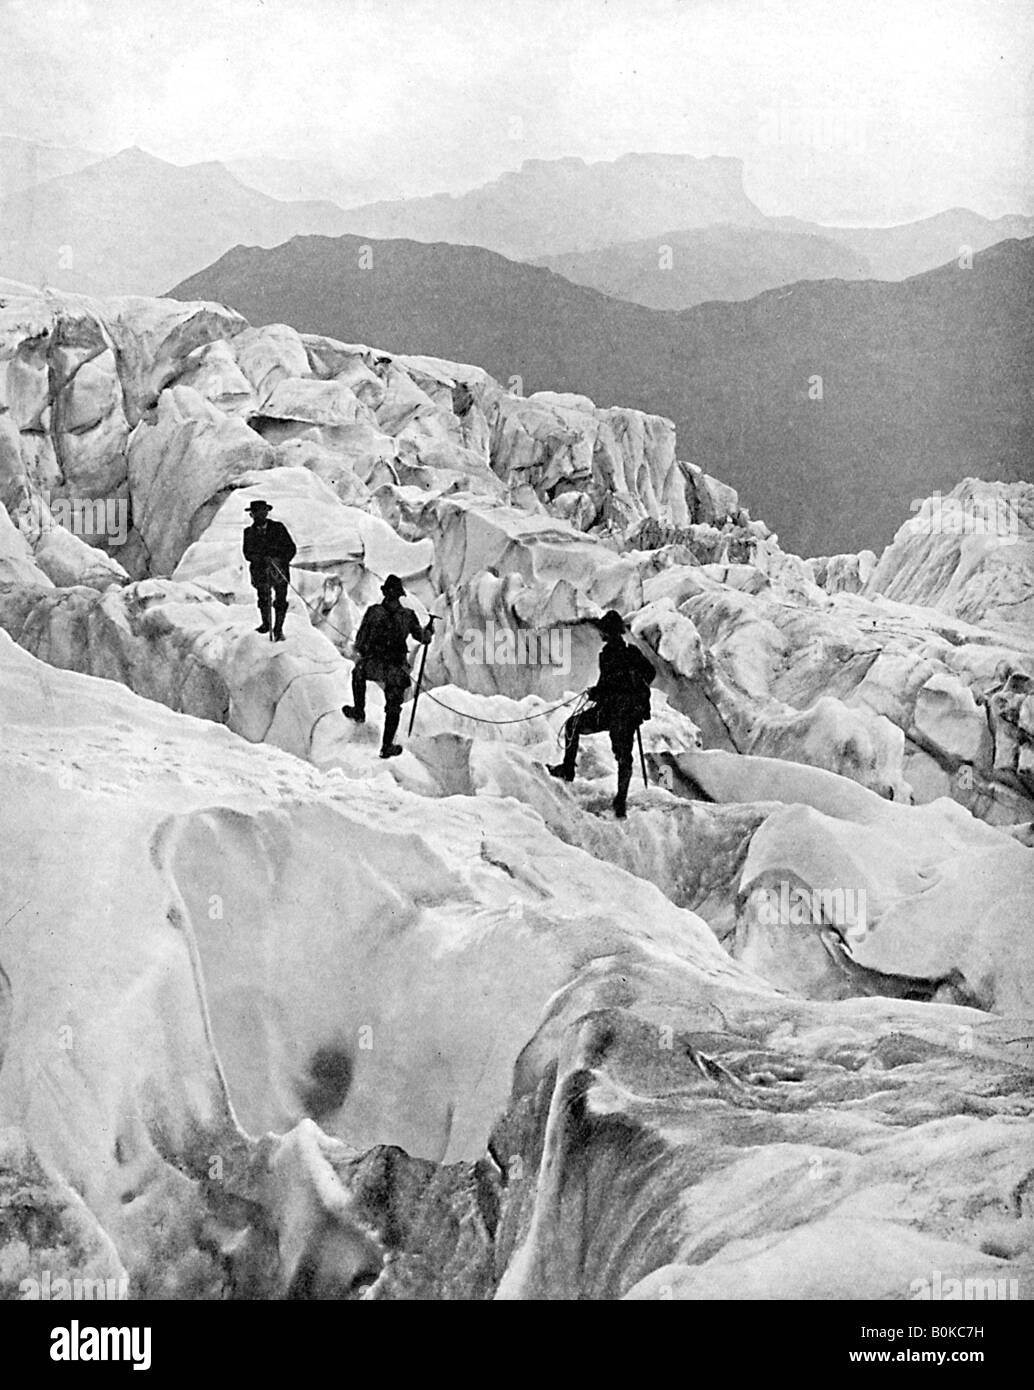 Grâce à l'escalade cascade Bossons sur le chemin jusqu'au Mont Blanc, Suisse, début xxe siècle. Artiste : Inconnu Banque D'Images